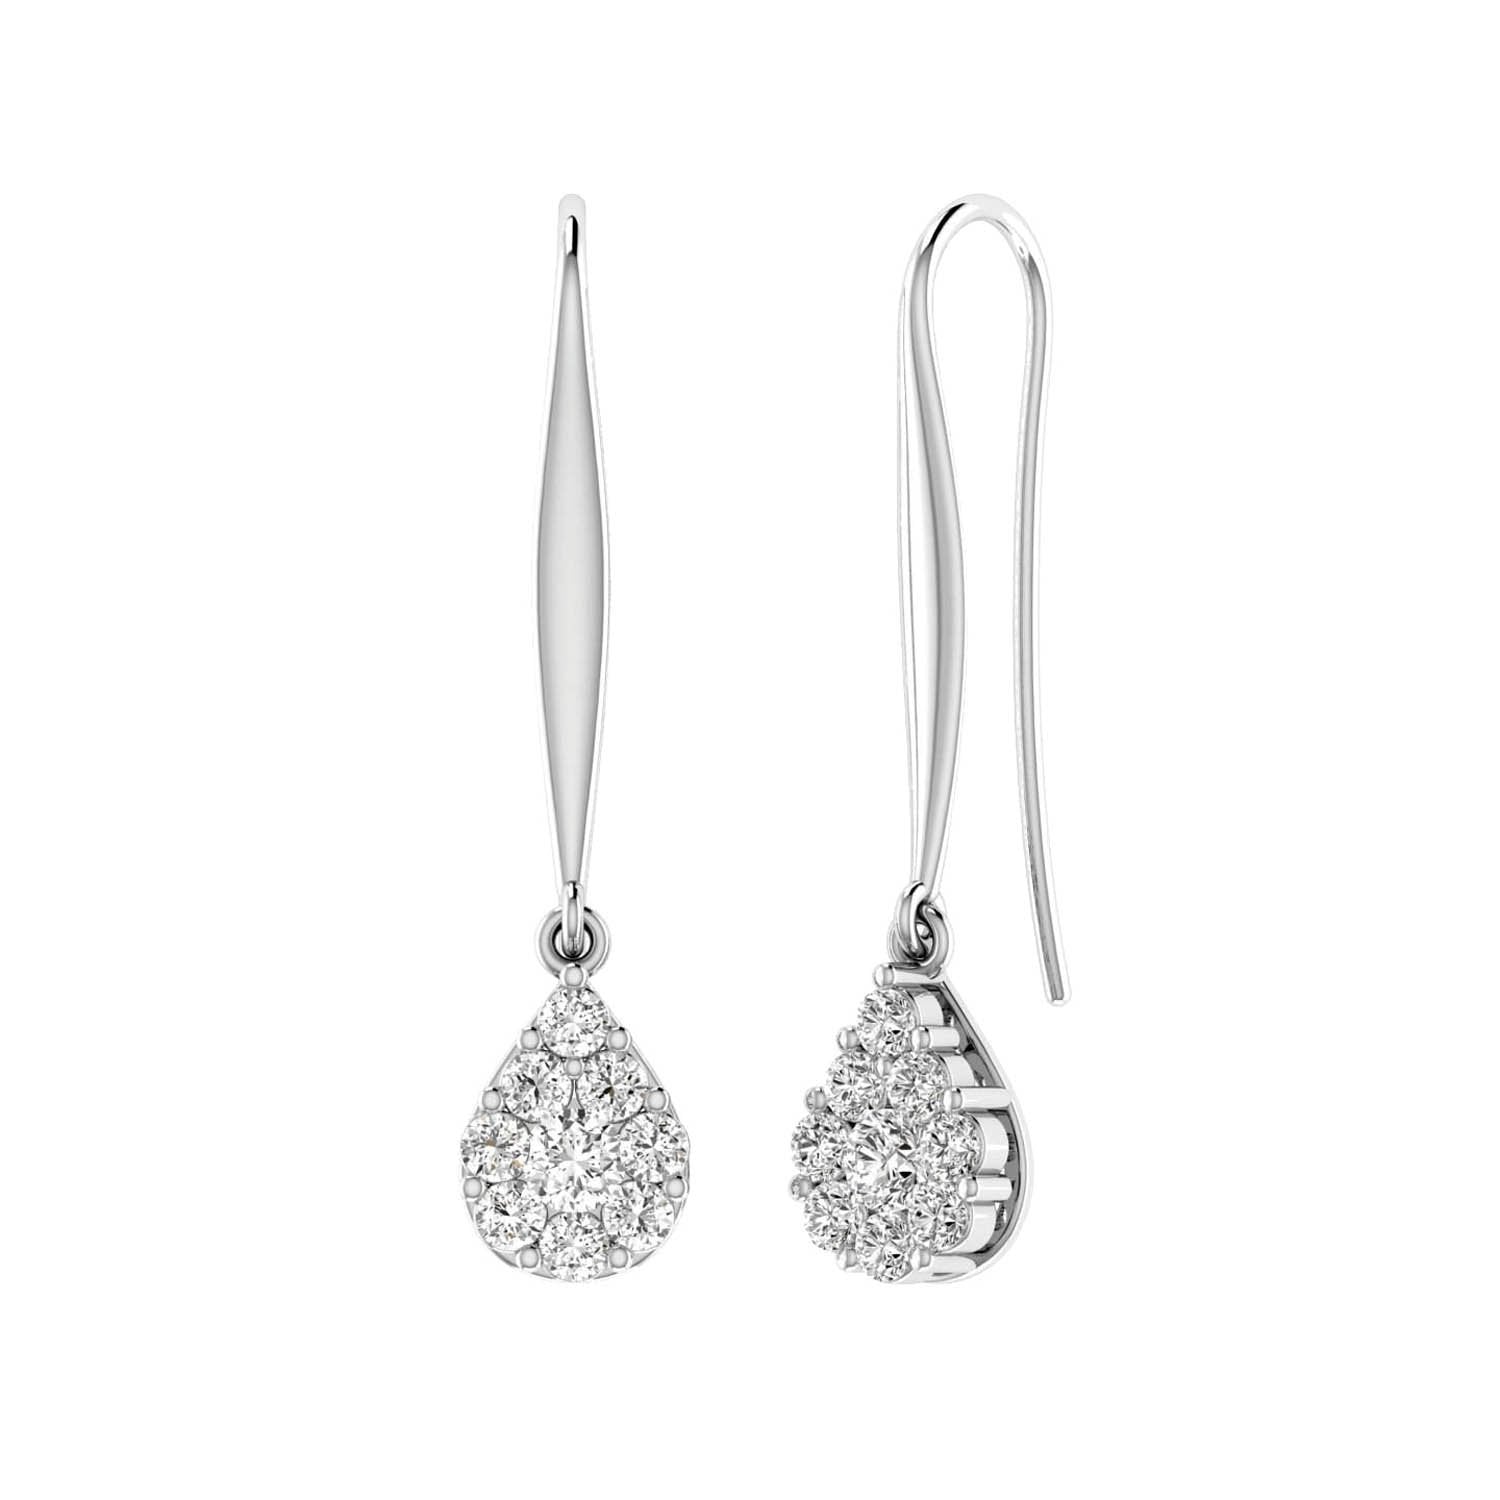 Tear Drop Hook Diamond Earrings with 0.10ct Diamonds in 9K White Gold - 9WTDSH10GH